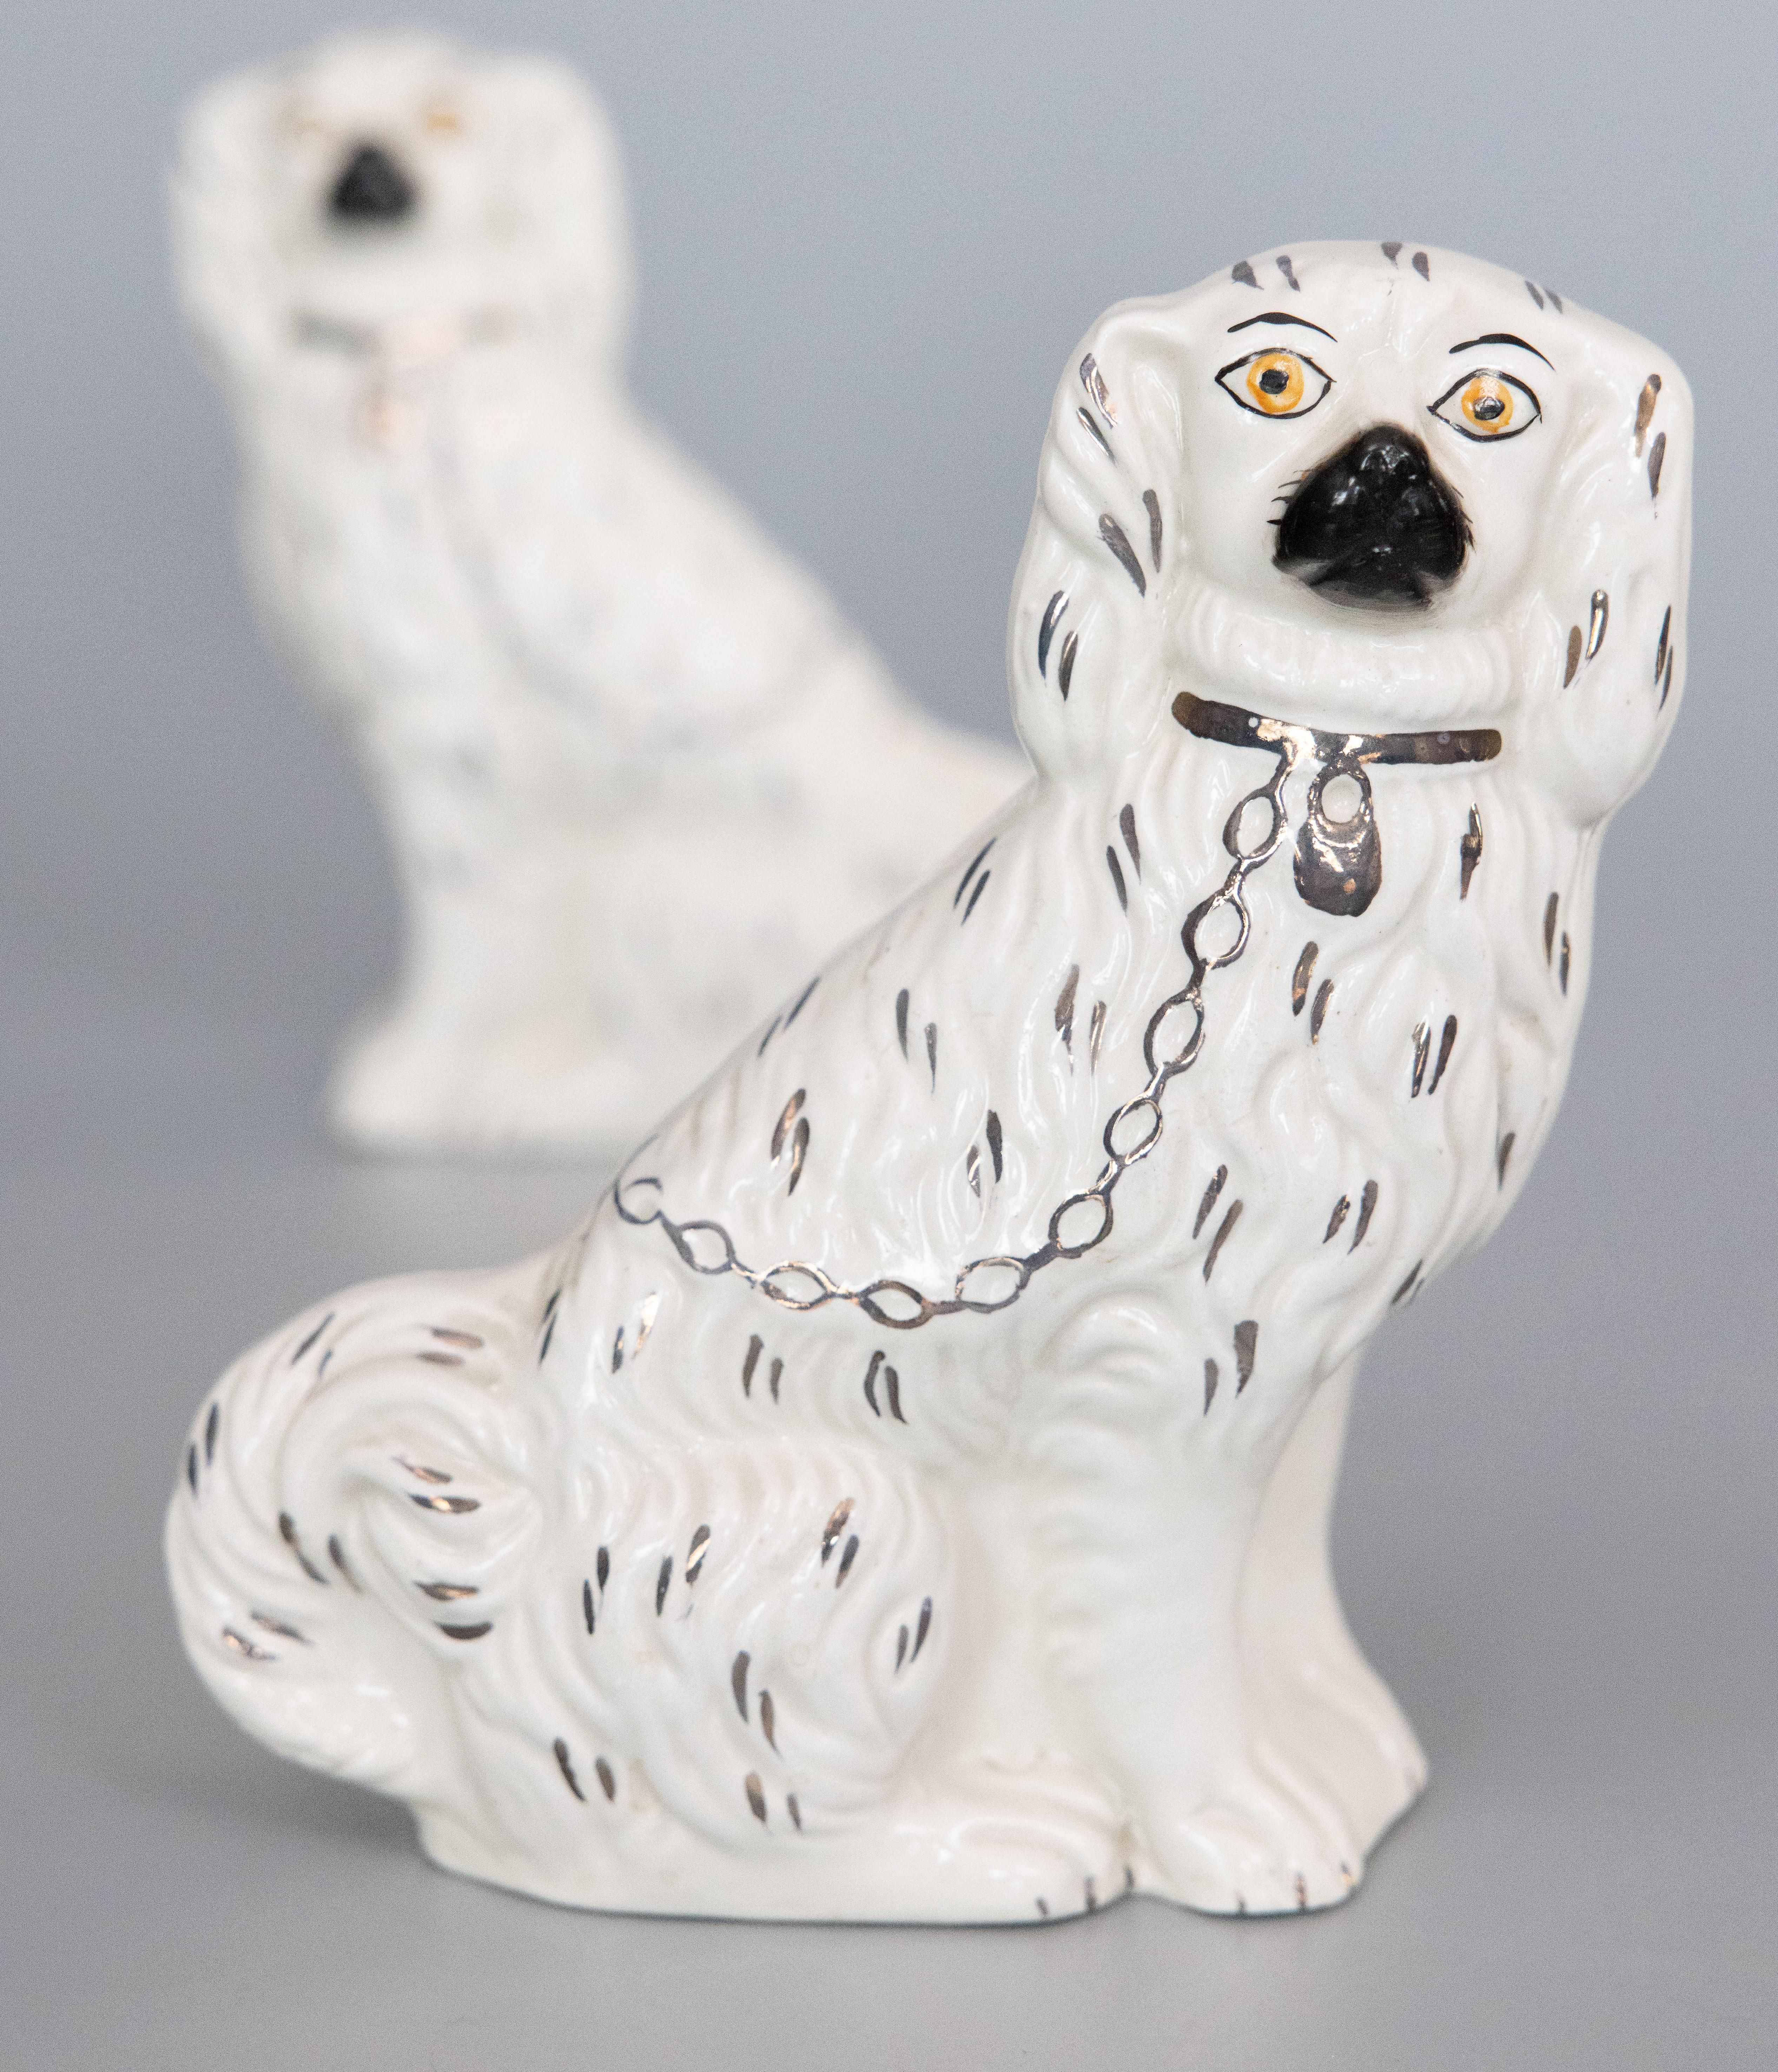 Une belle paire de chiens de cheminée antiques du début du 20e siècle en Staffordshire anglais. Marqué au revers. Ces charmants chiens sont peints à la main avec de jolis détails dorés et des visages adorables. Ils constituent la paire de chiens